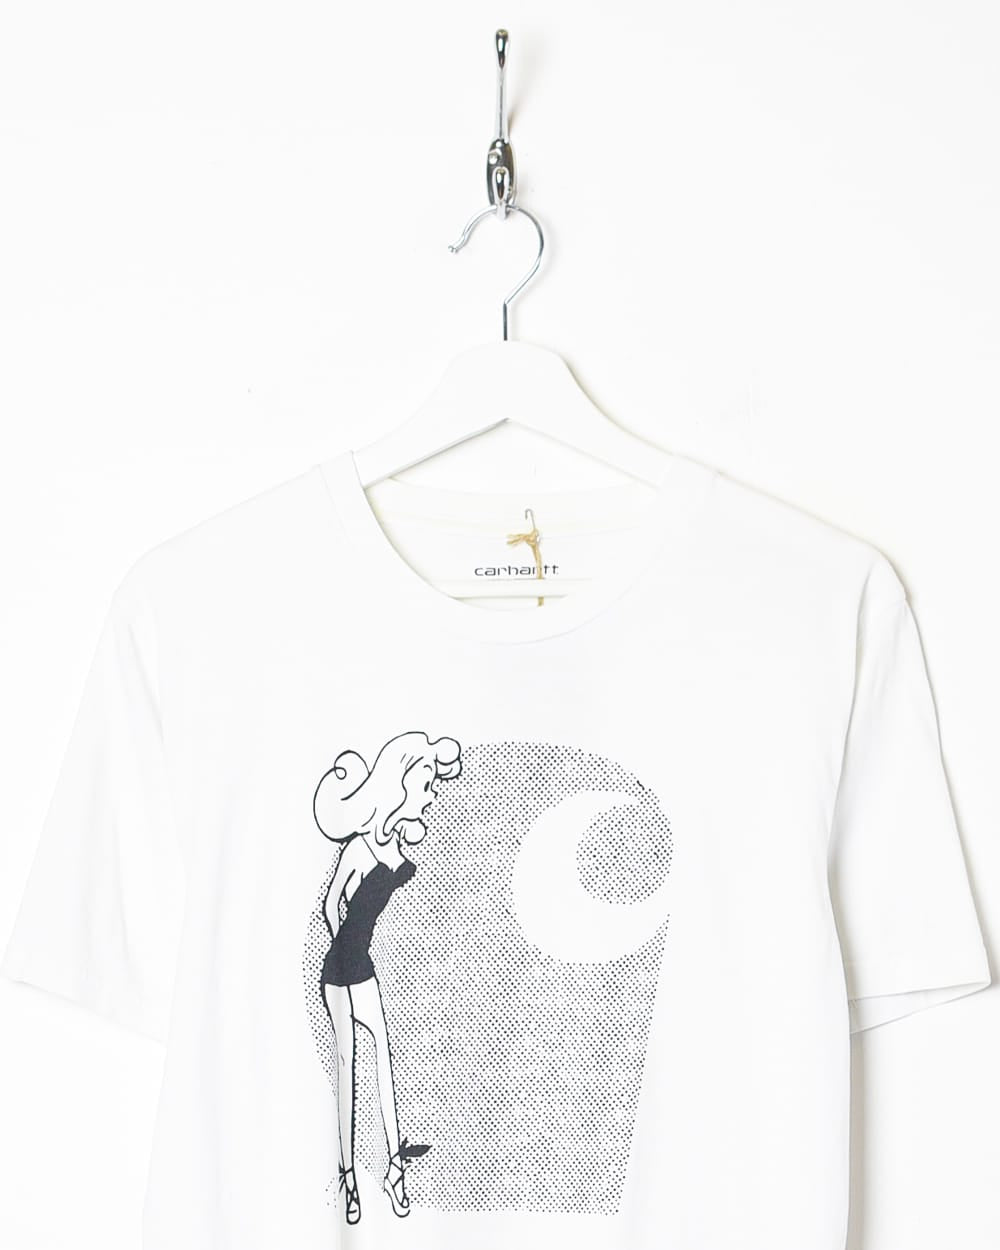 White Carhartt Graphic T-Shirt - Medium